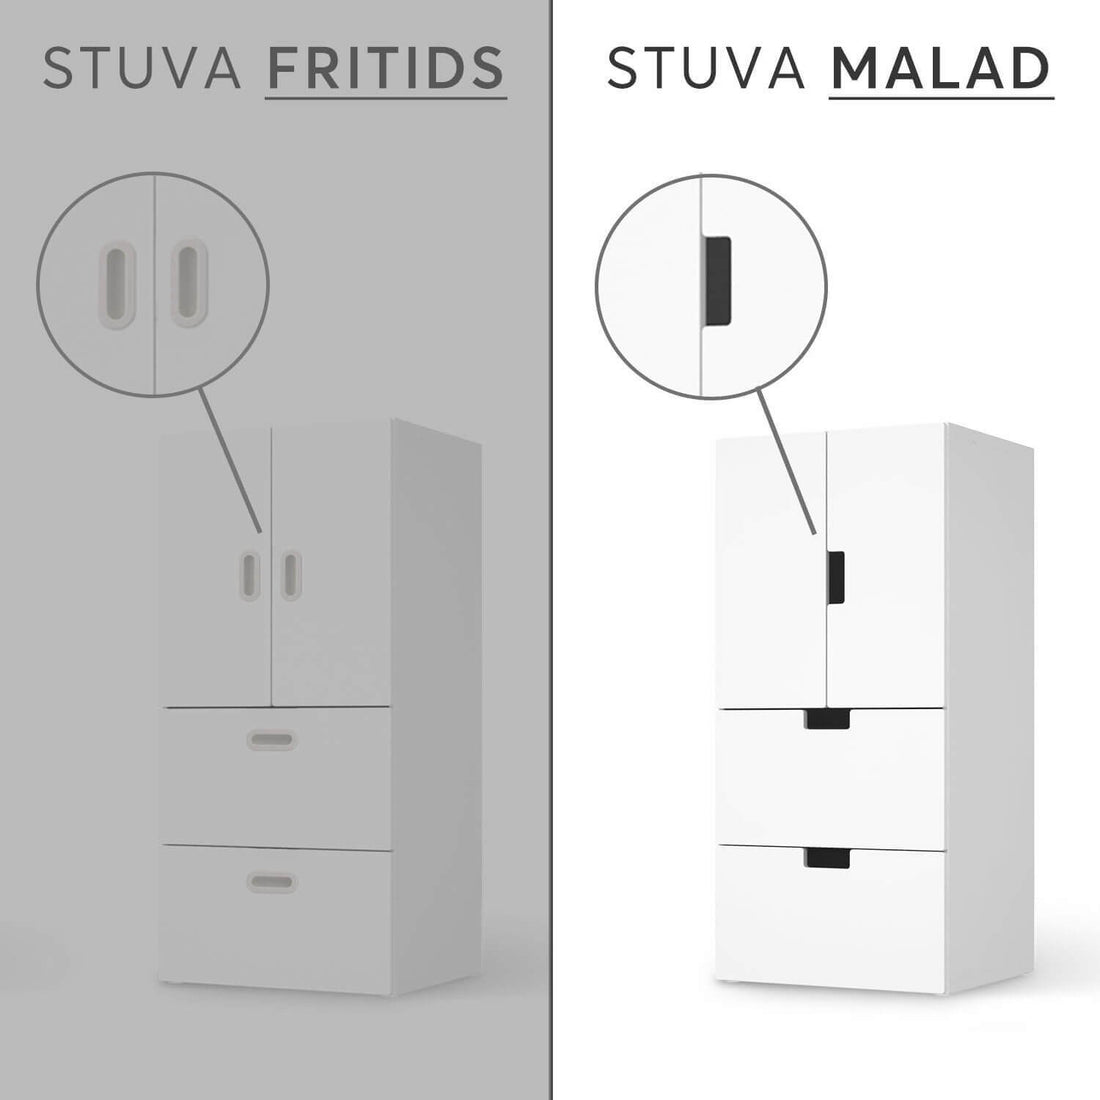 Vergleich IKEA Stuva Malad / Fritids - Reisterrassen